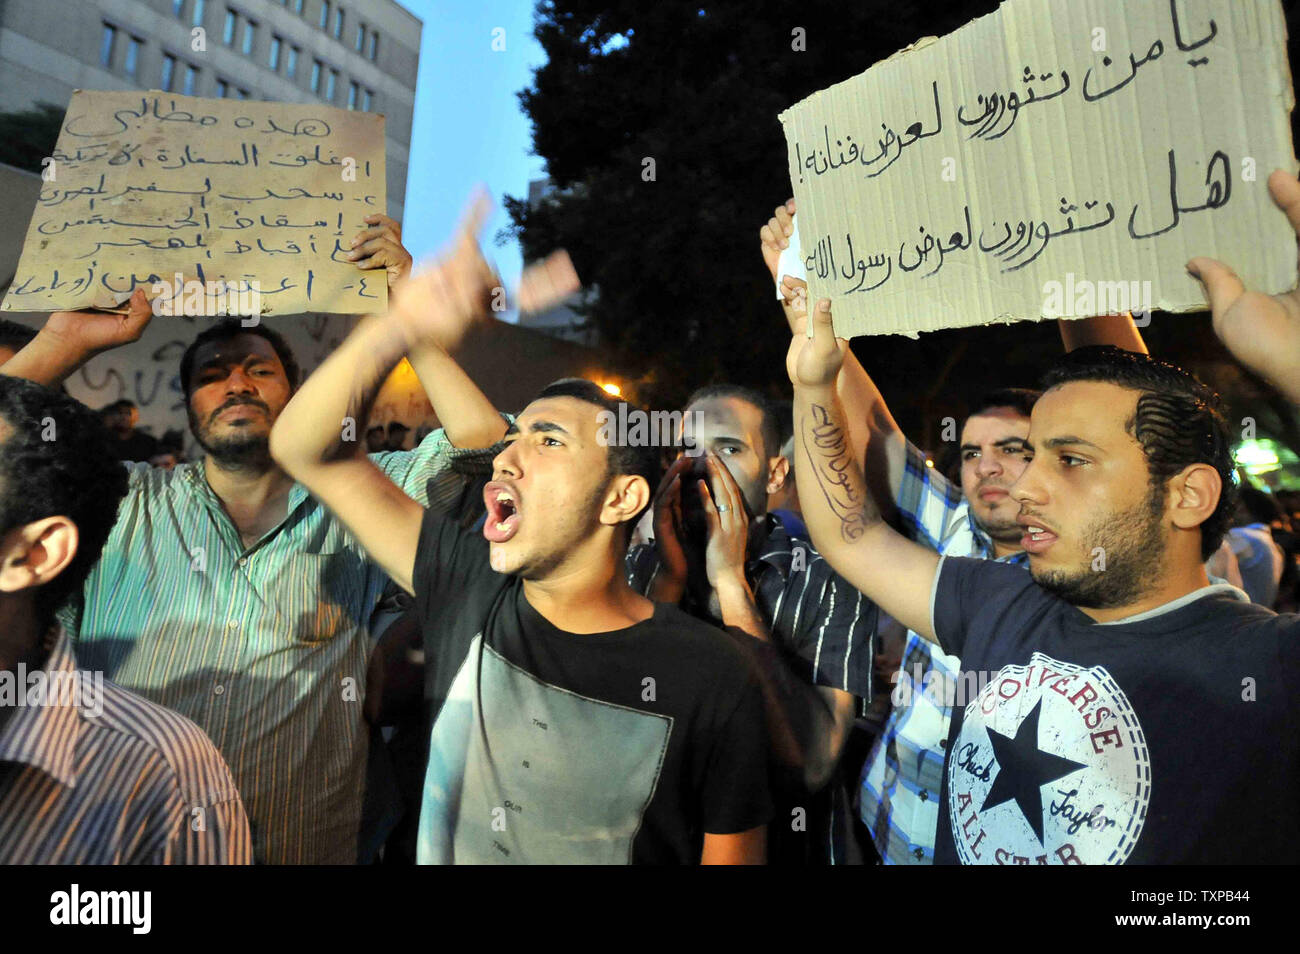 Ägyptische shout Slogans während eines Protestes vor der amerikanischen Botschaft in Kairo September 12, 2012, eine Demonstration gegen einen Film Angriff auf den Islam und den Propheten Mohammad erachtet. In Libyen, islamische Extremisten getötet, der amerikanische Botschafter, wie sie das amerikanische Konsulat in Bengasi im Zorn gegen die wenig bekannte Film von einem amateur amerikanischen Filmemacher stürmte. UPI Stockfoto